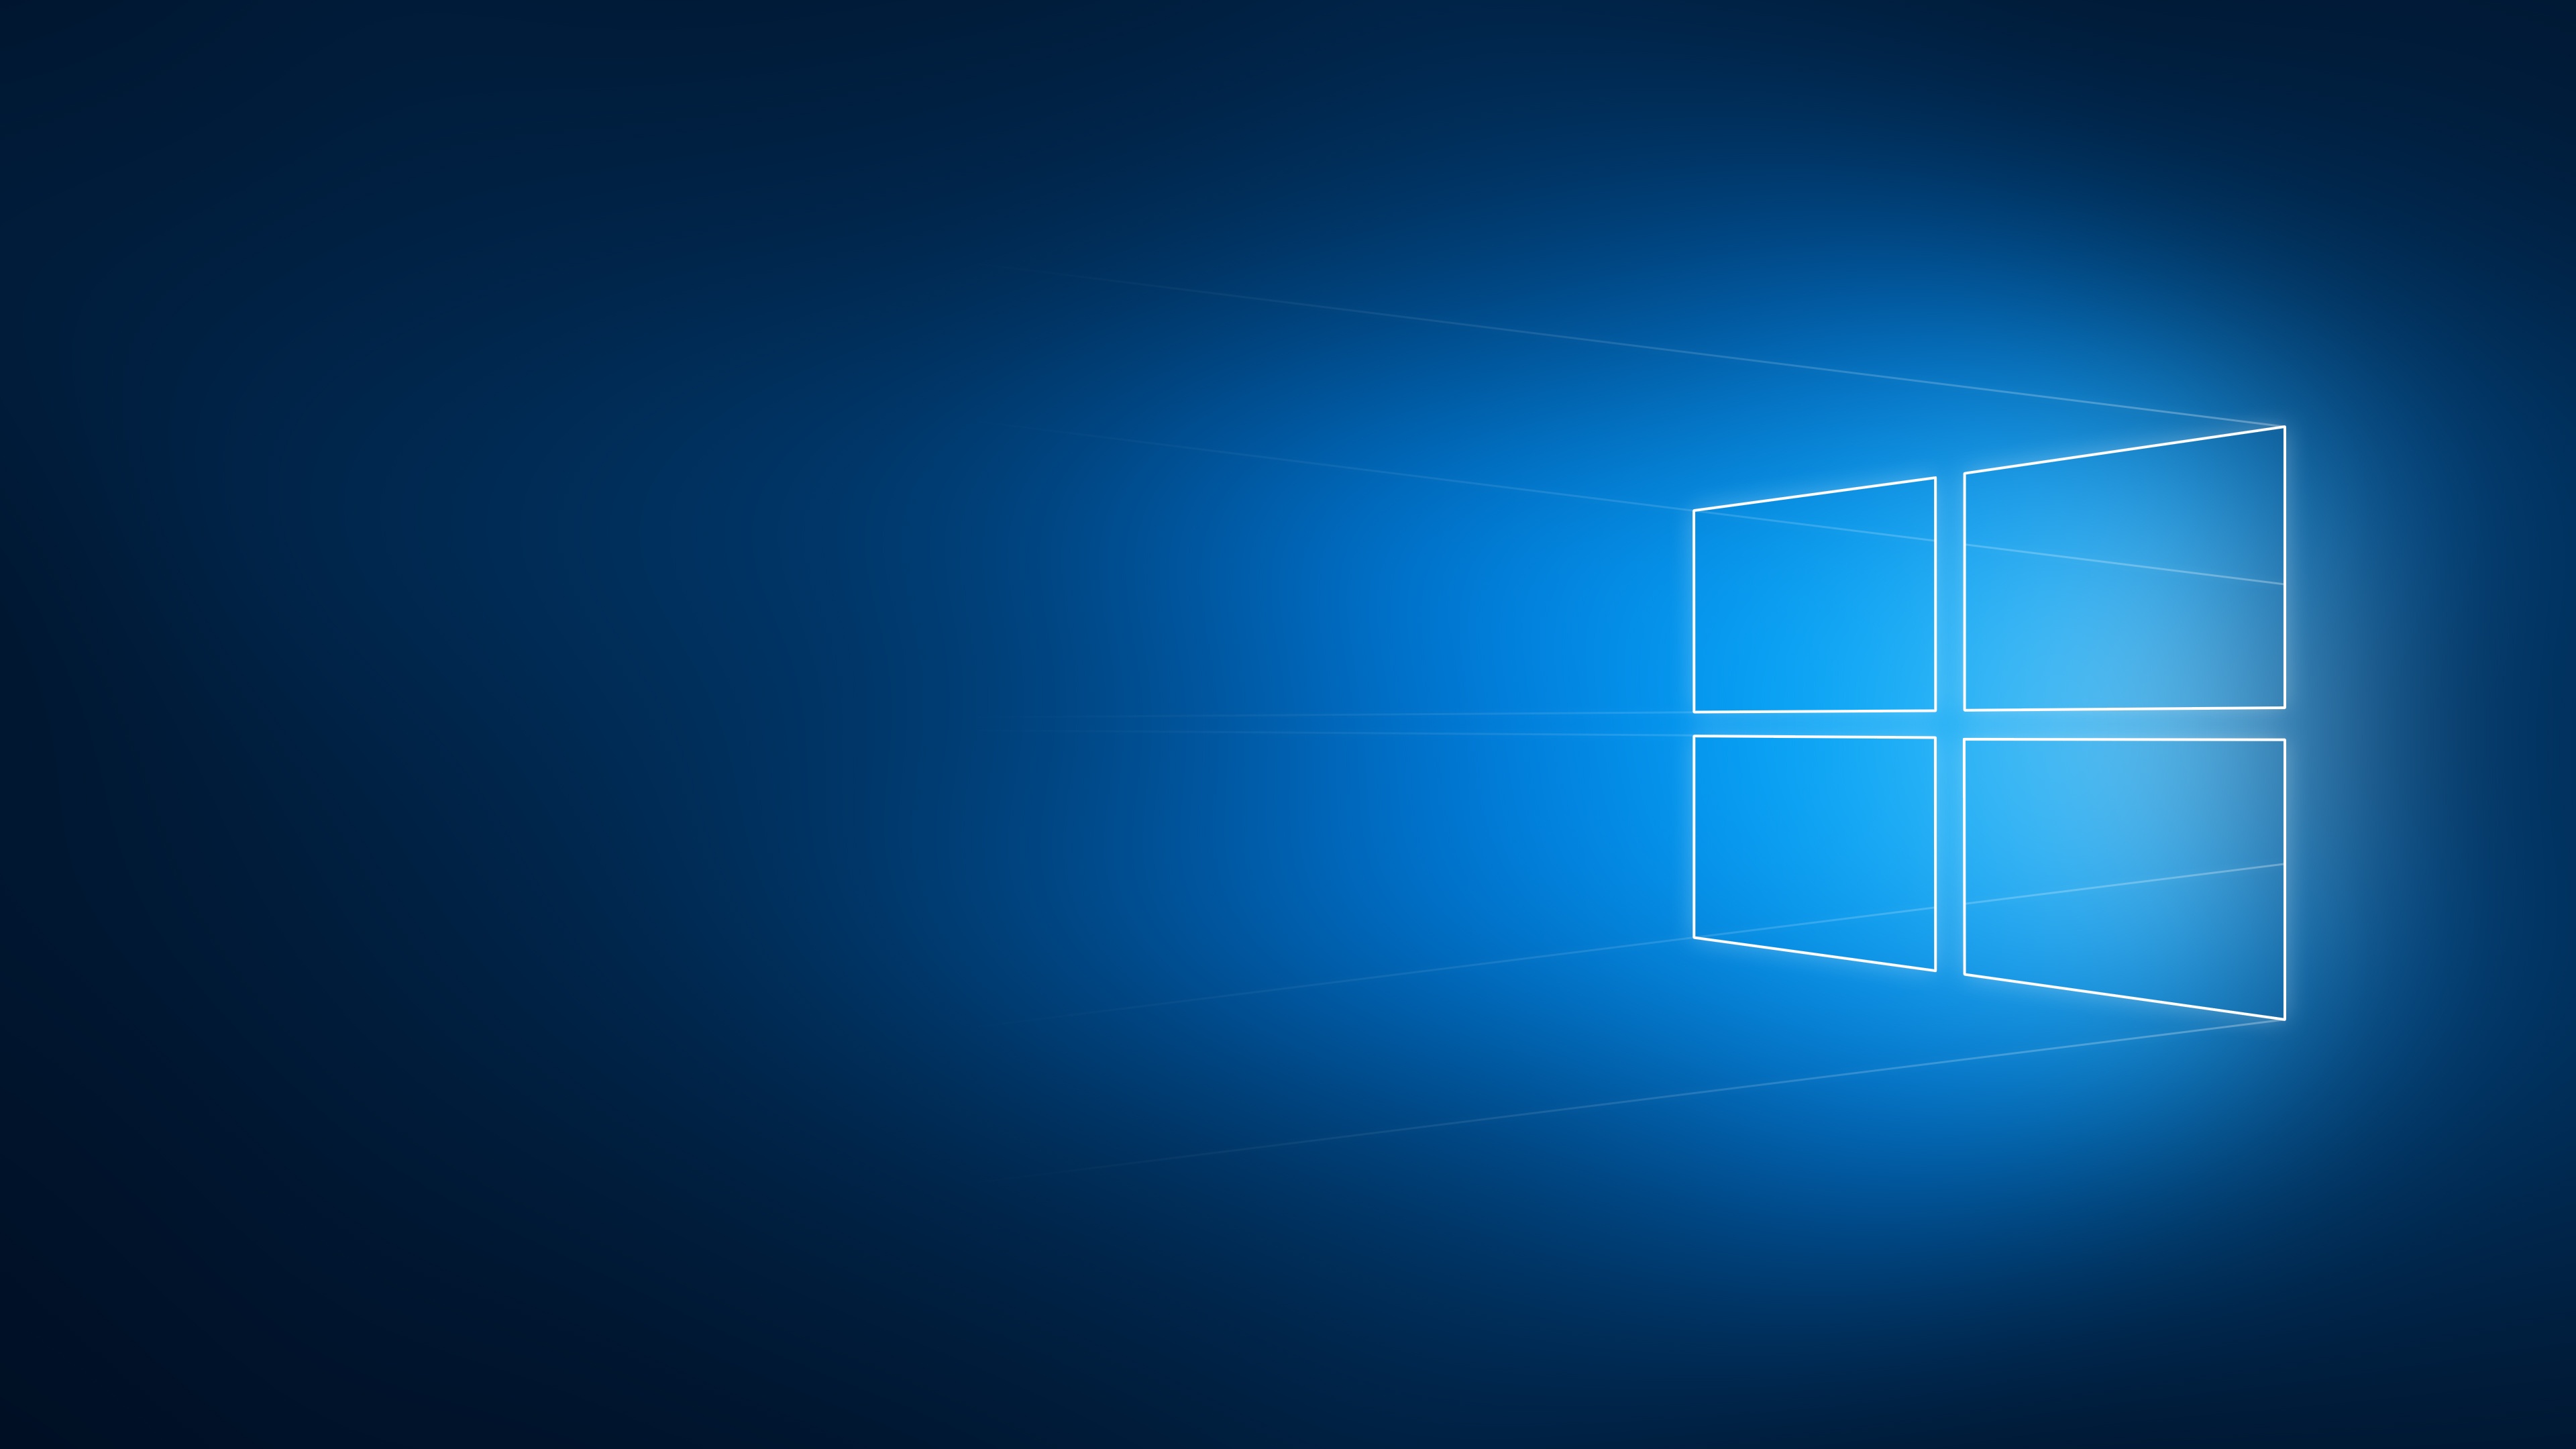 Скачать обои бесплатно Окна, Технологии, Windows 10 картинка на рабочий стол ПК